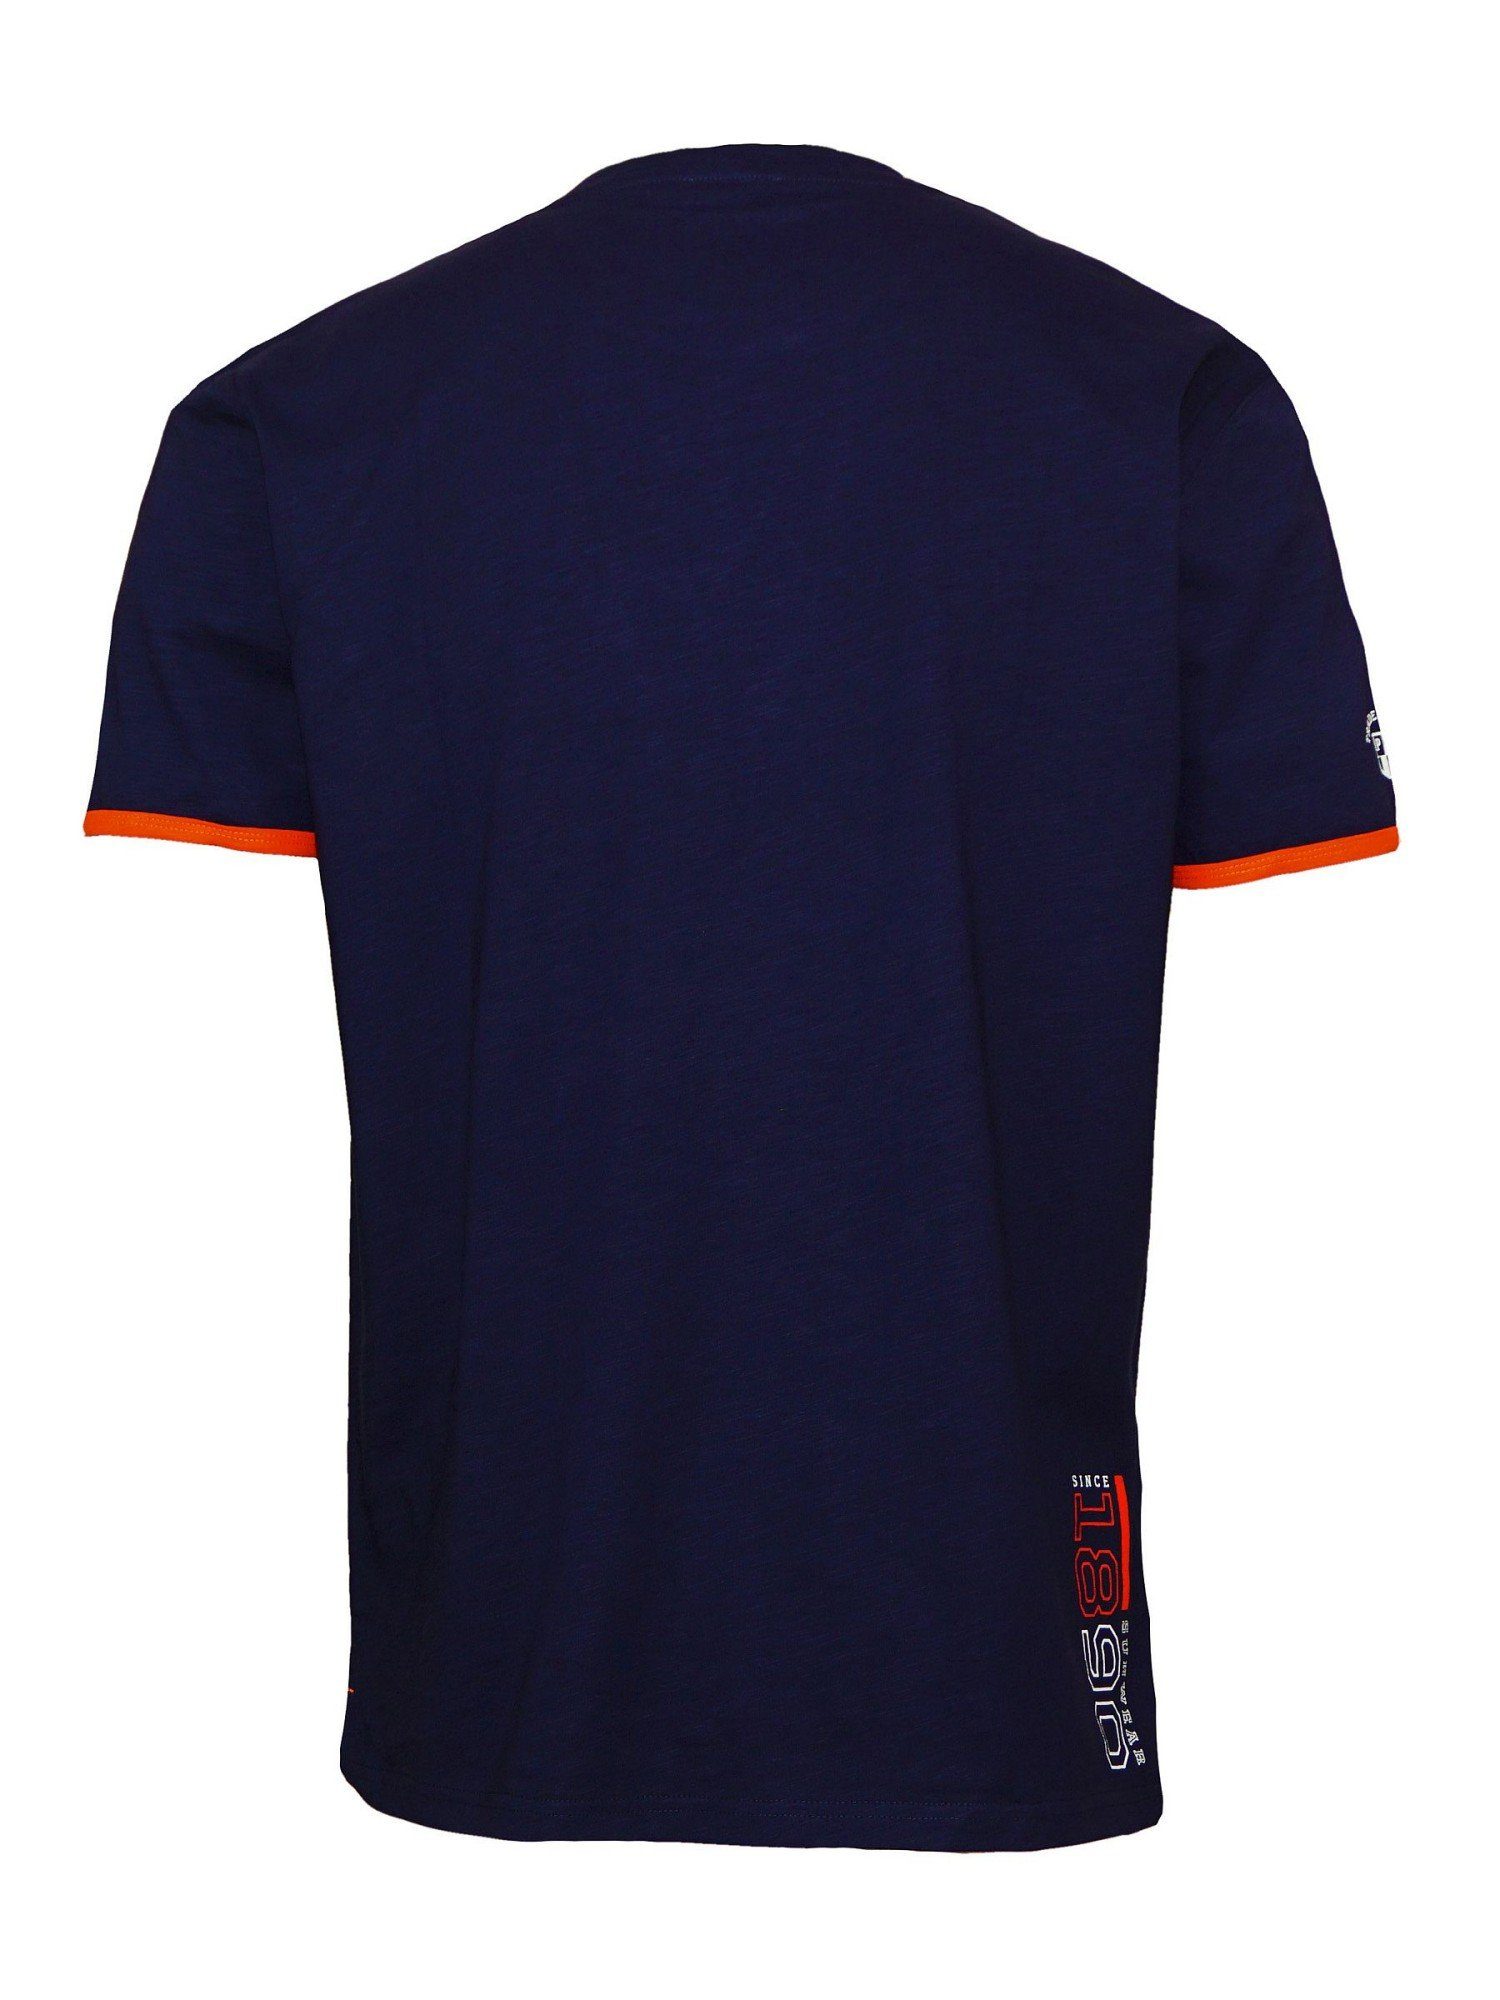 U.S. Polo Assn T-Shirt Shirt T-Shirt Emer dunkelblau